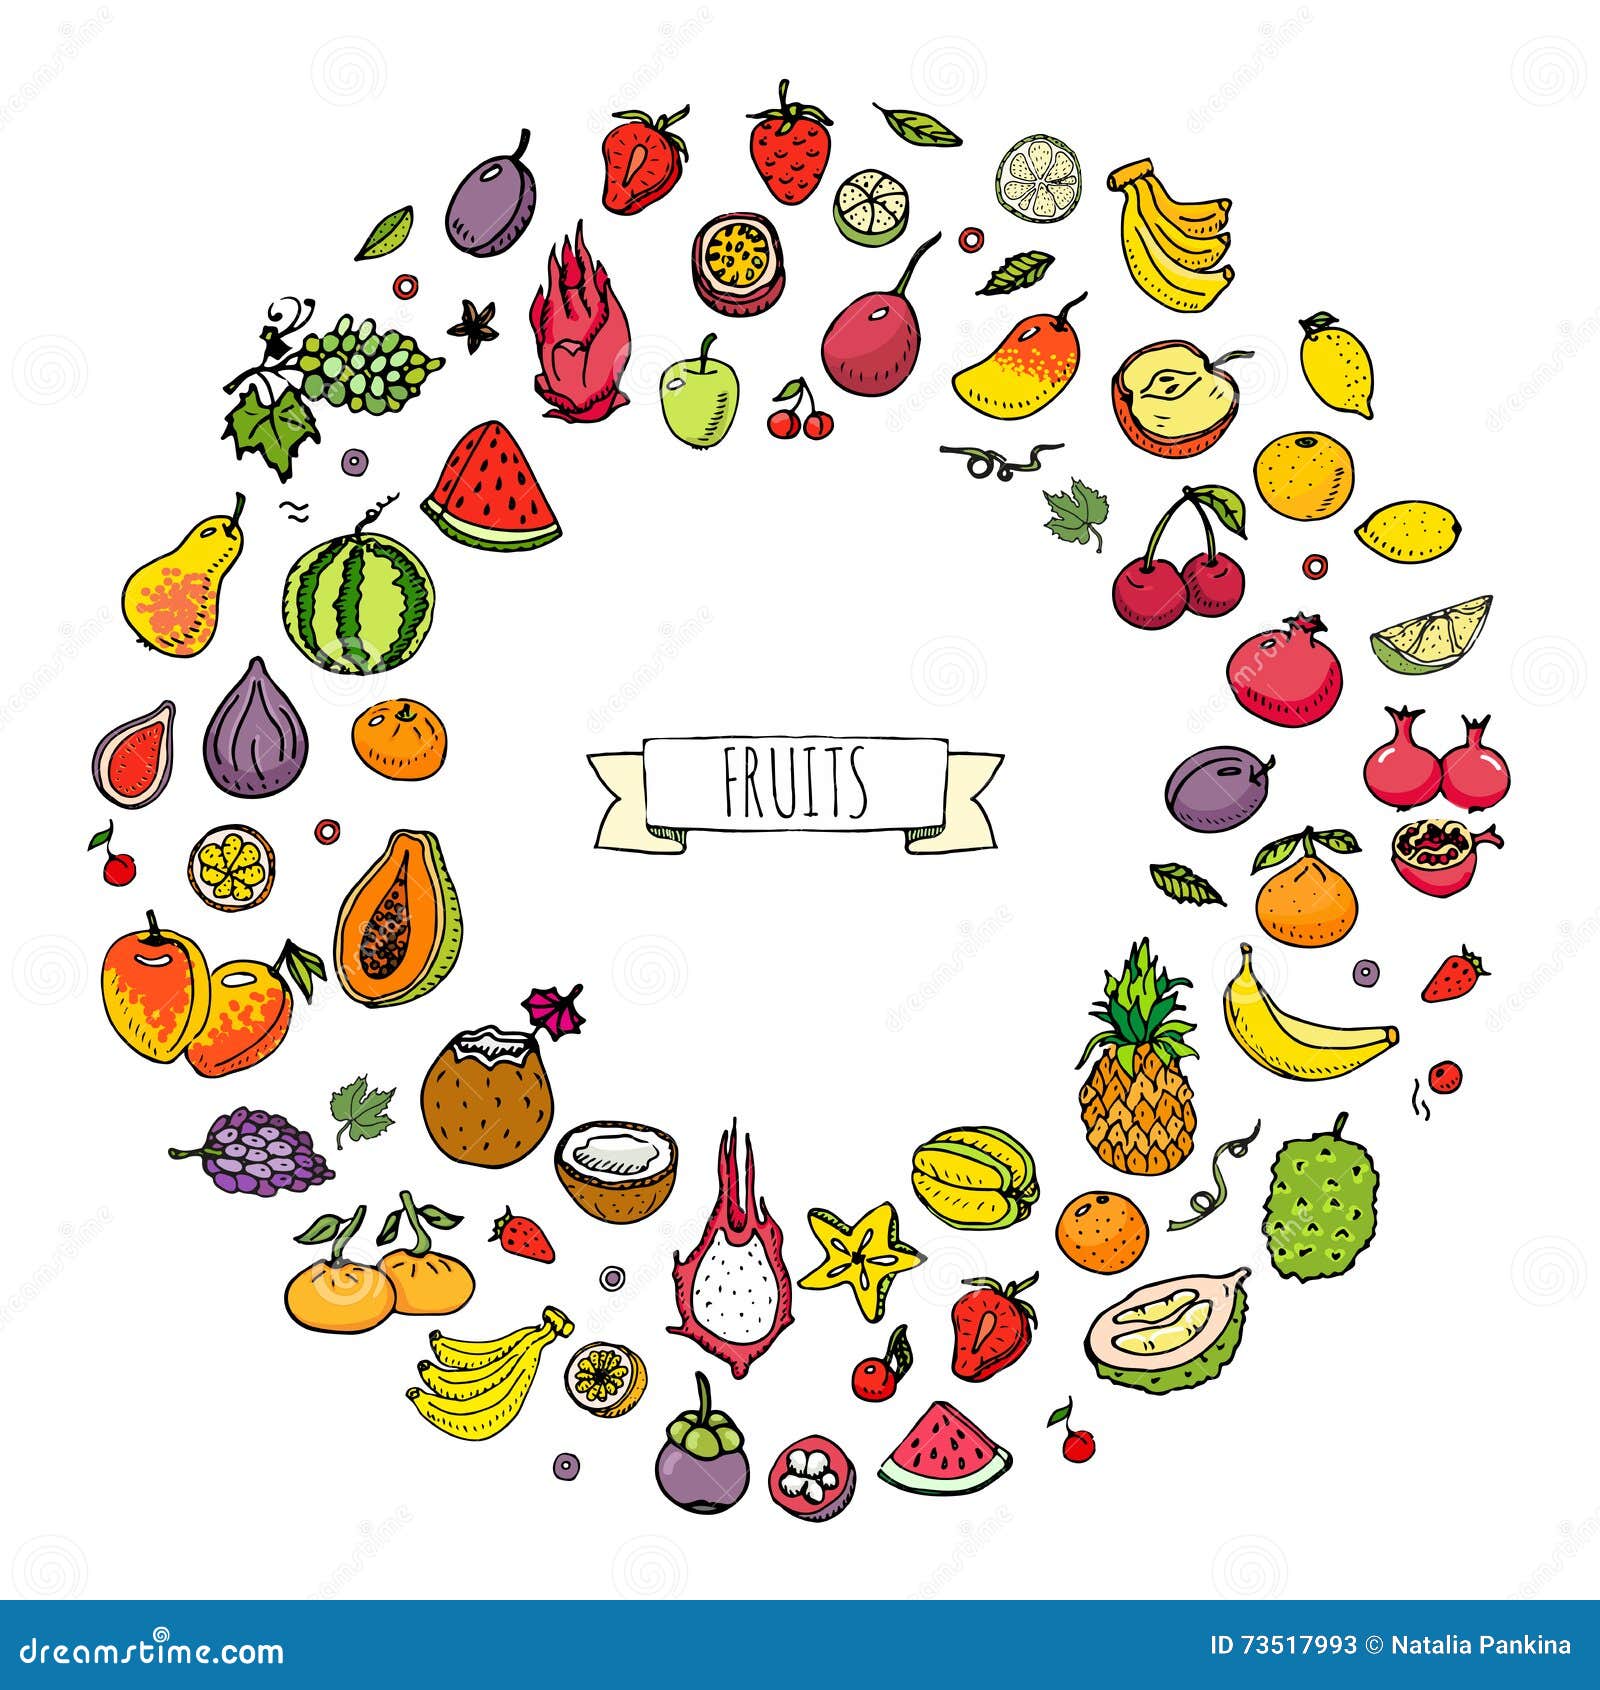 Элемент плодовое. Фруктовые элементы и так далее.. Рисунок из повторяющихся элементов фрукты.